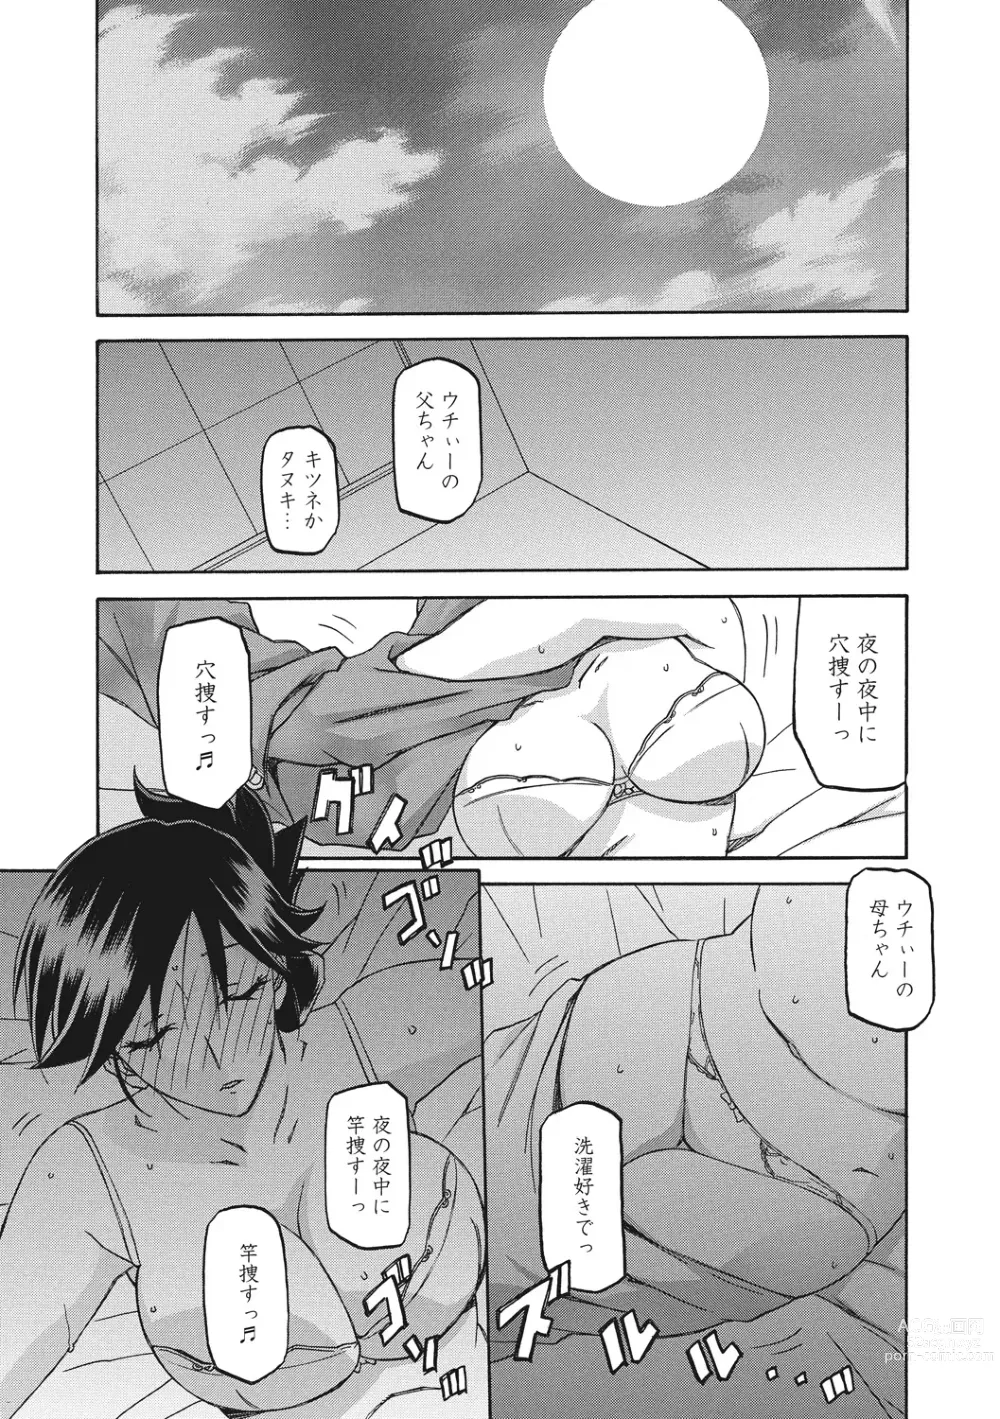 Page 21 of manga Gekkakou no Ori